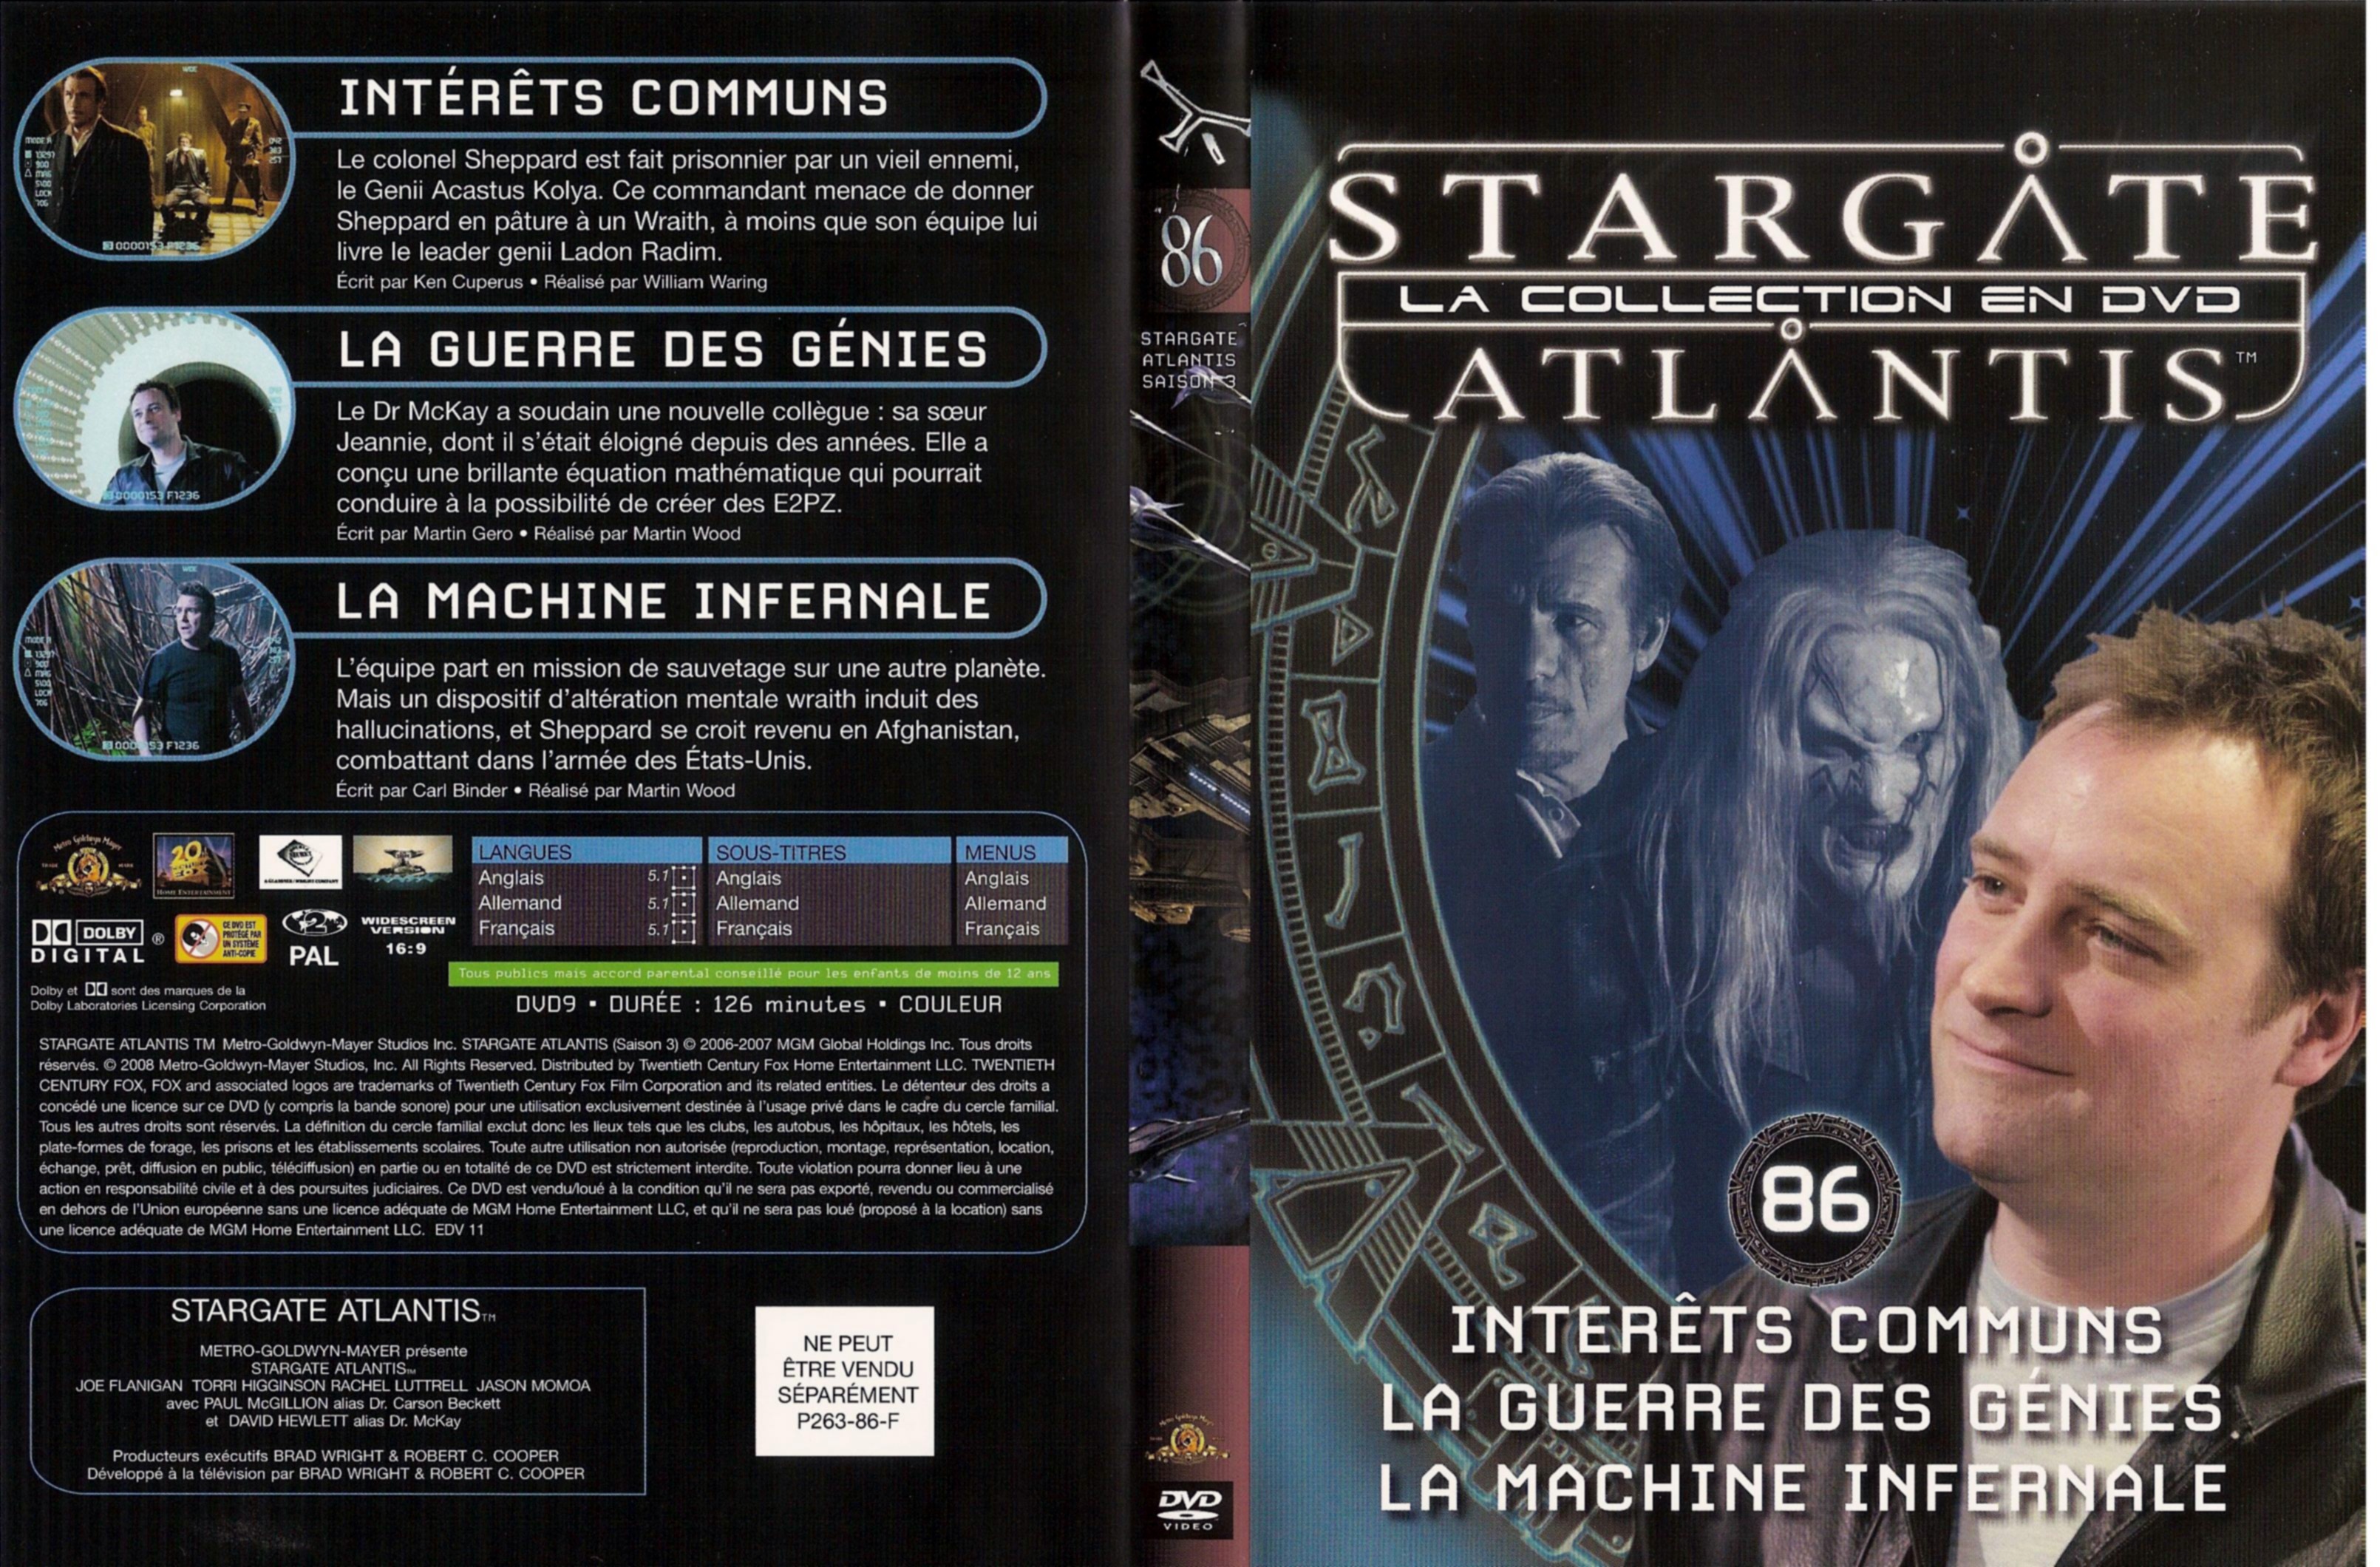 Jaquette DVD Stargate atlantis saison 3 vol 86